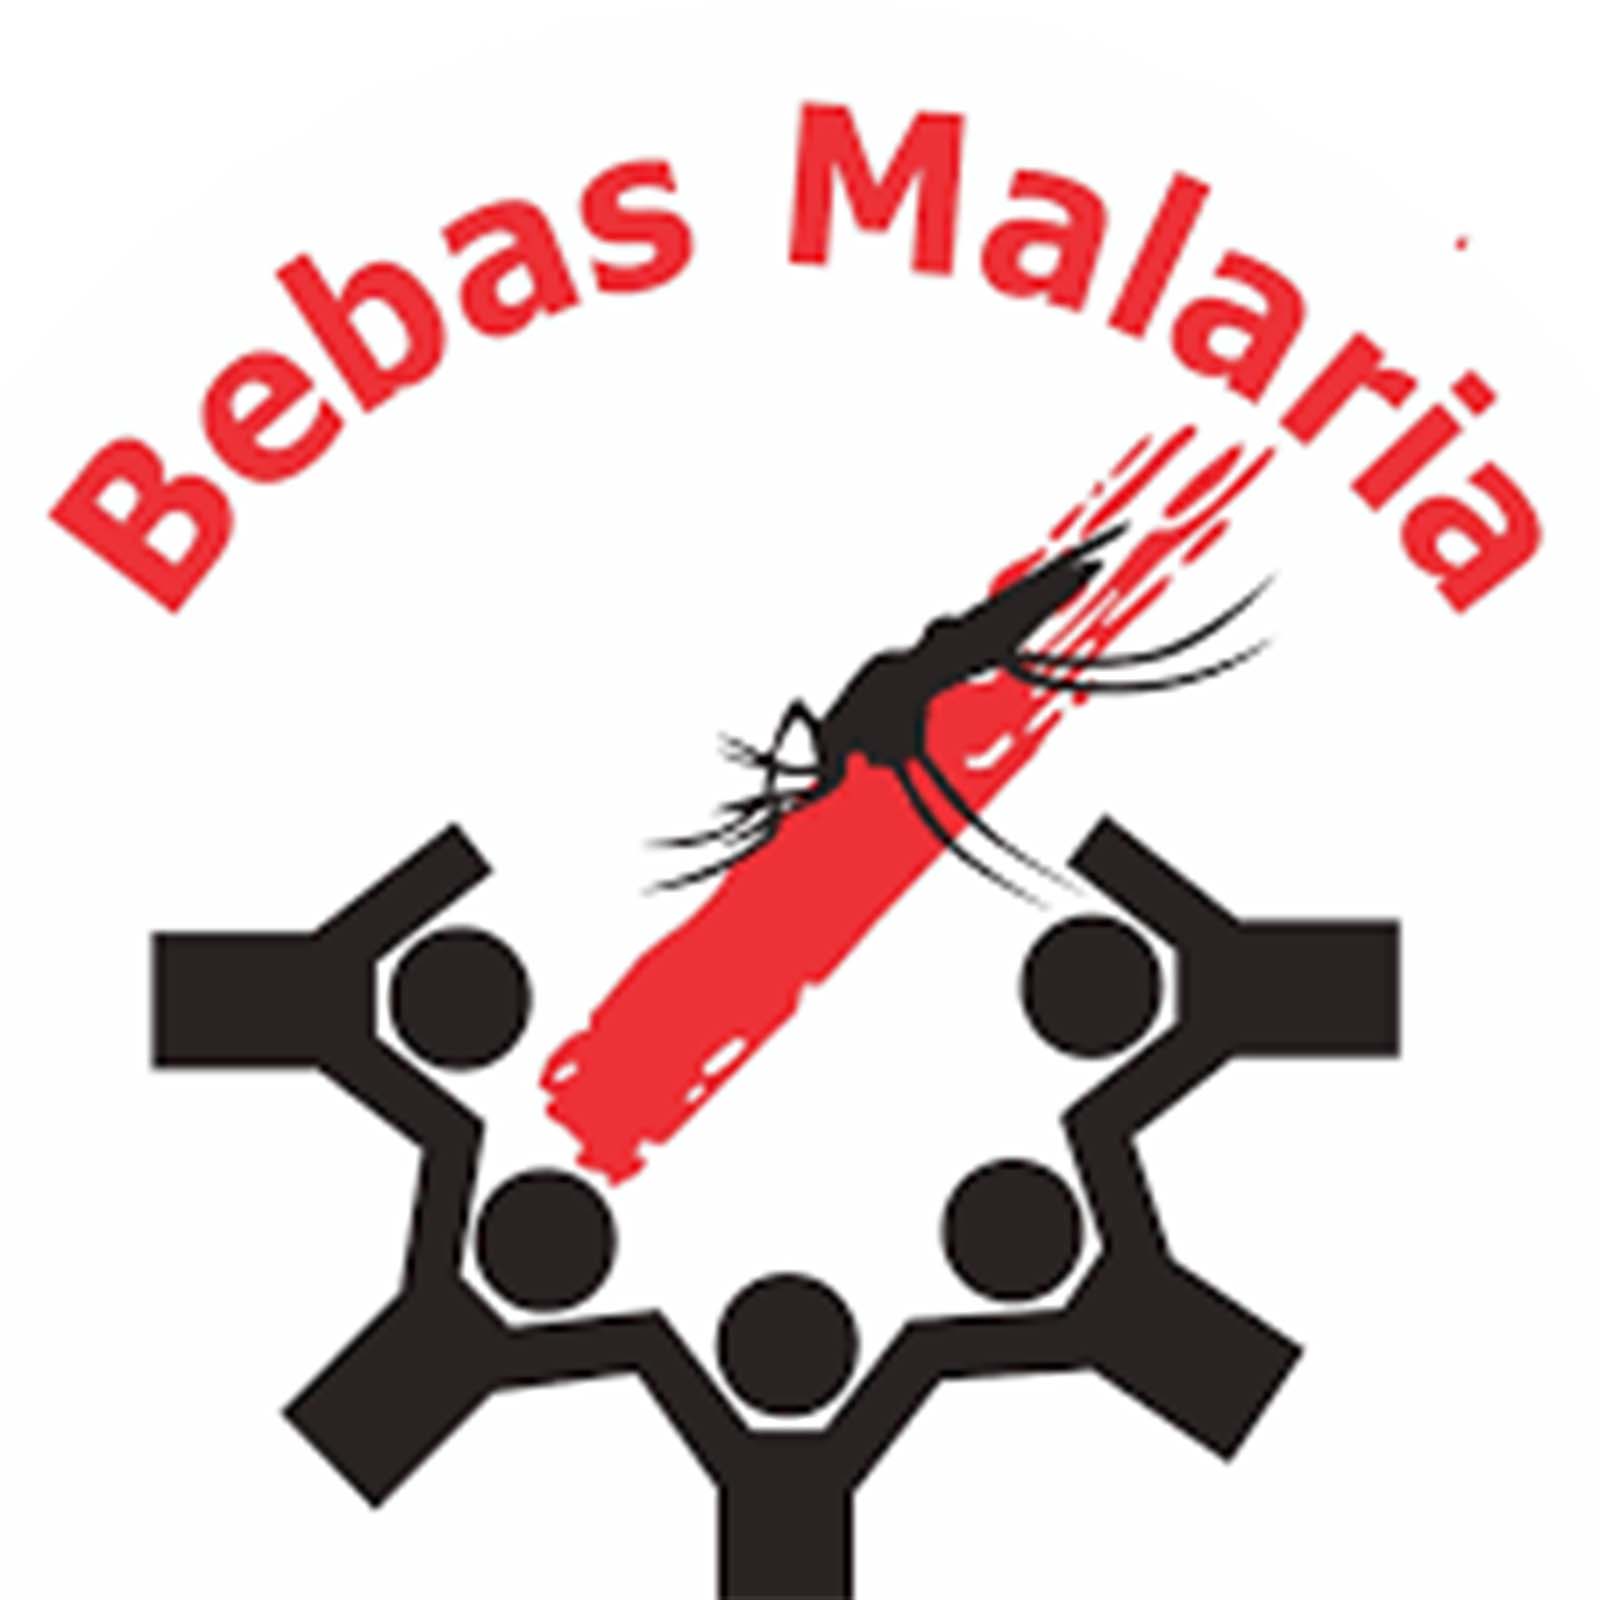 Zero Kasus, Eliminasi Malaria di Bengkulu Selatan